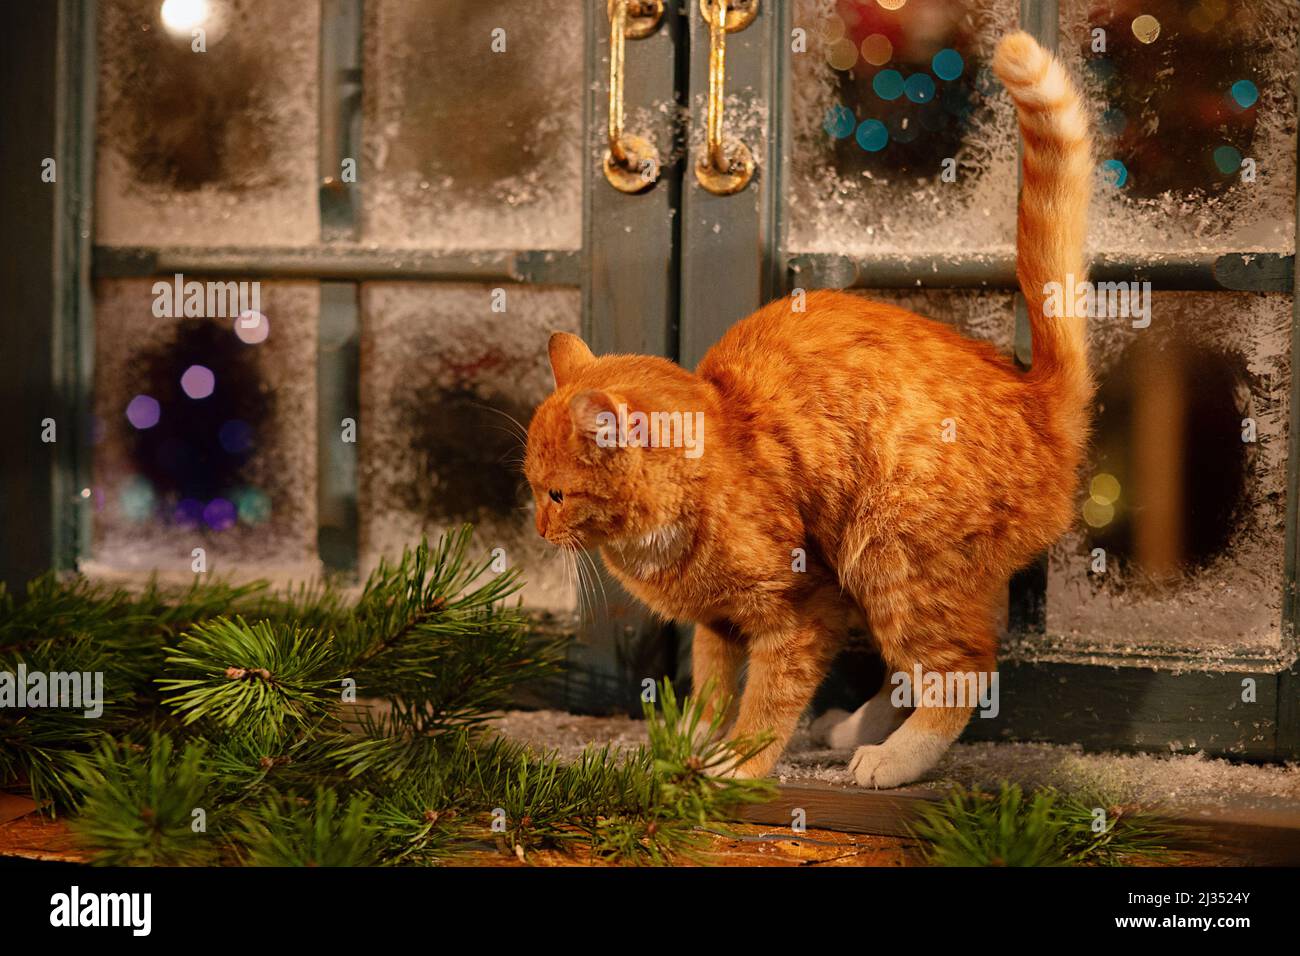 Un beau chat de gingembre marche sur le rebord de la fenêtre près d'une fenêtre enneigée, à l'extérieur de la maison Banque D'Images